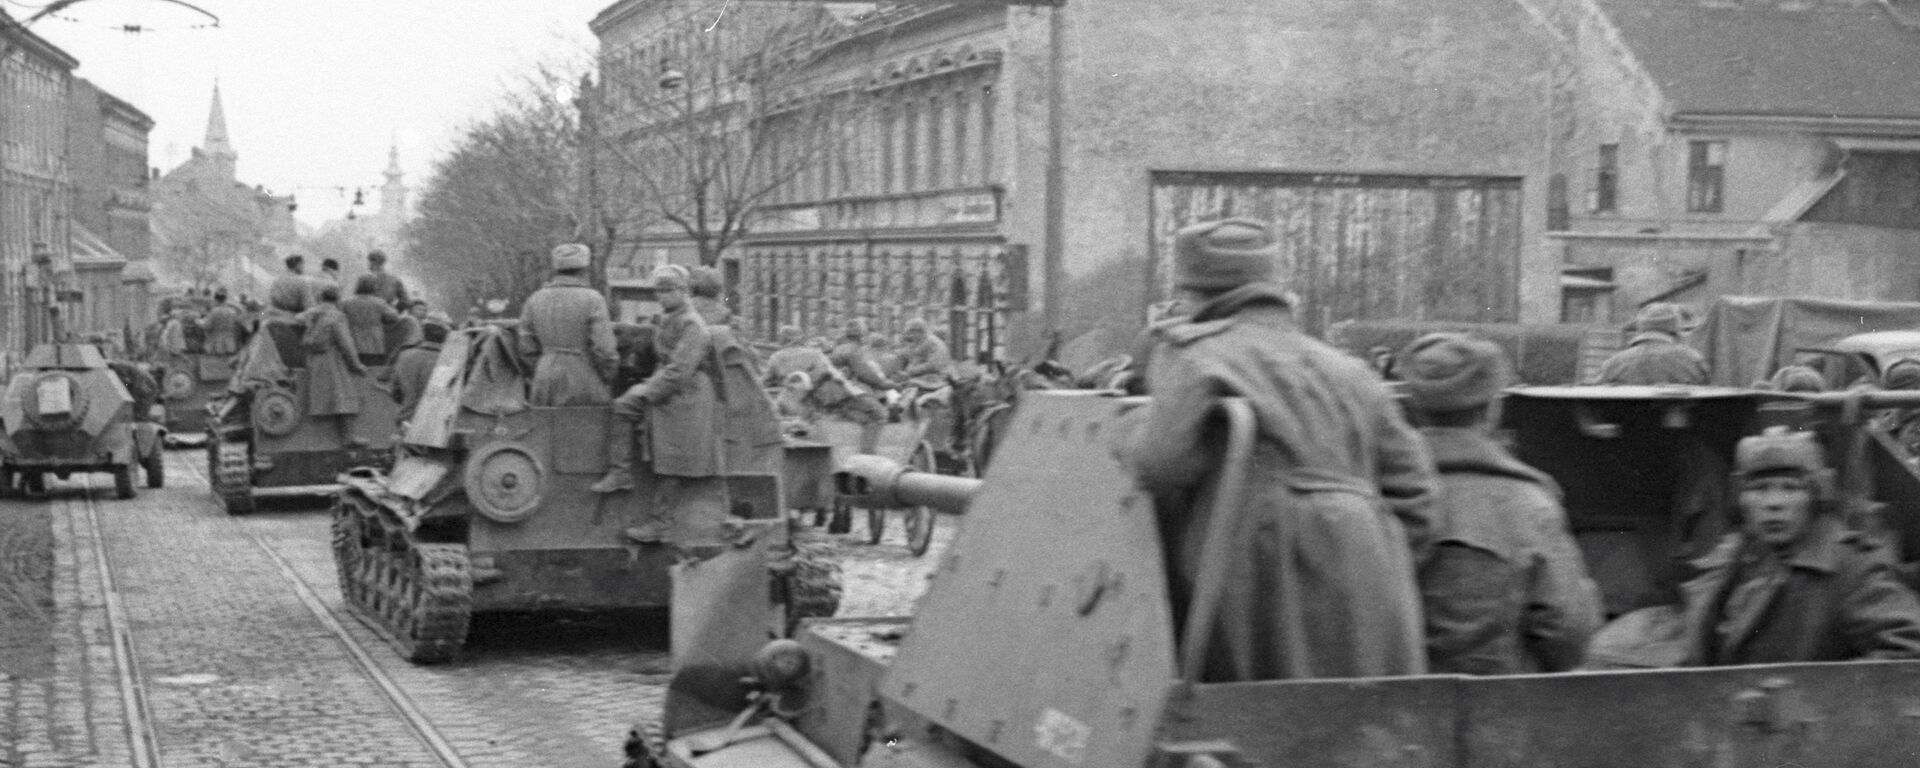 Tropas soviéticas entran en Viena tras liberar la ciudad de las fuerzas nazis (archivo) - Sputnik Mundo, 1920, 16.03.2020